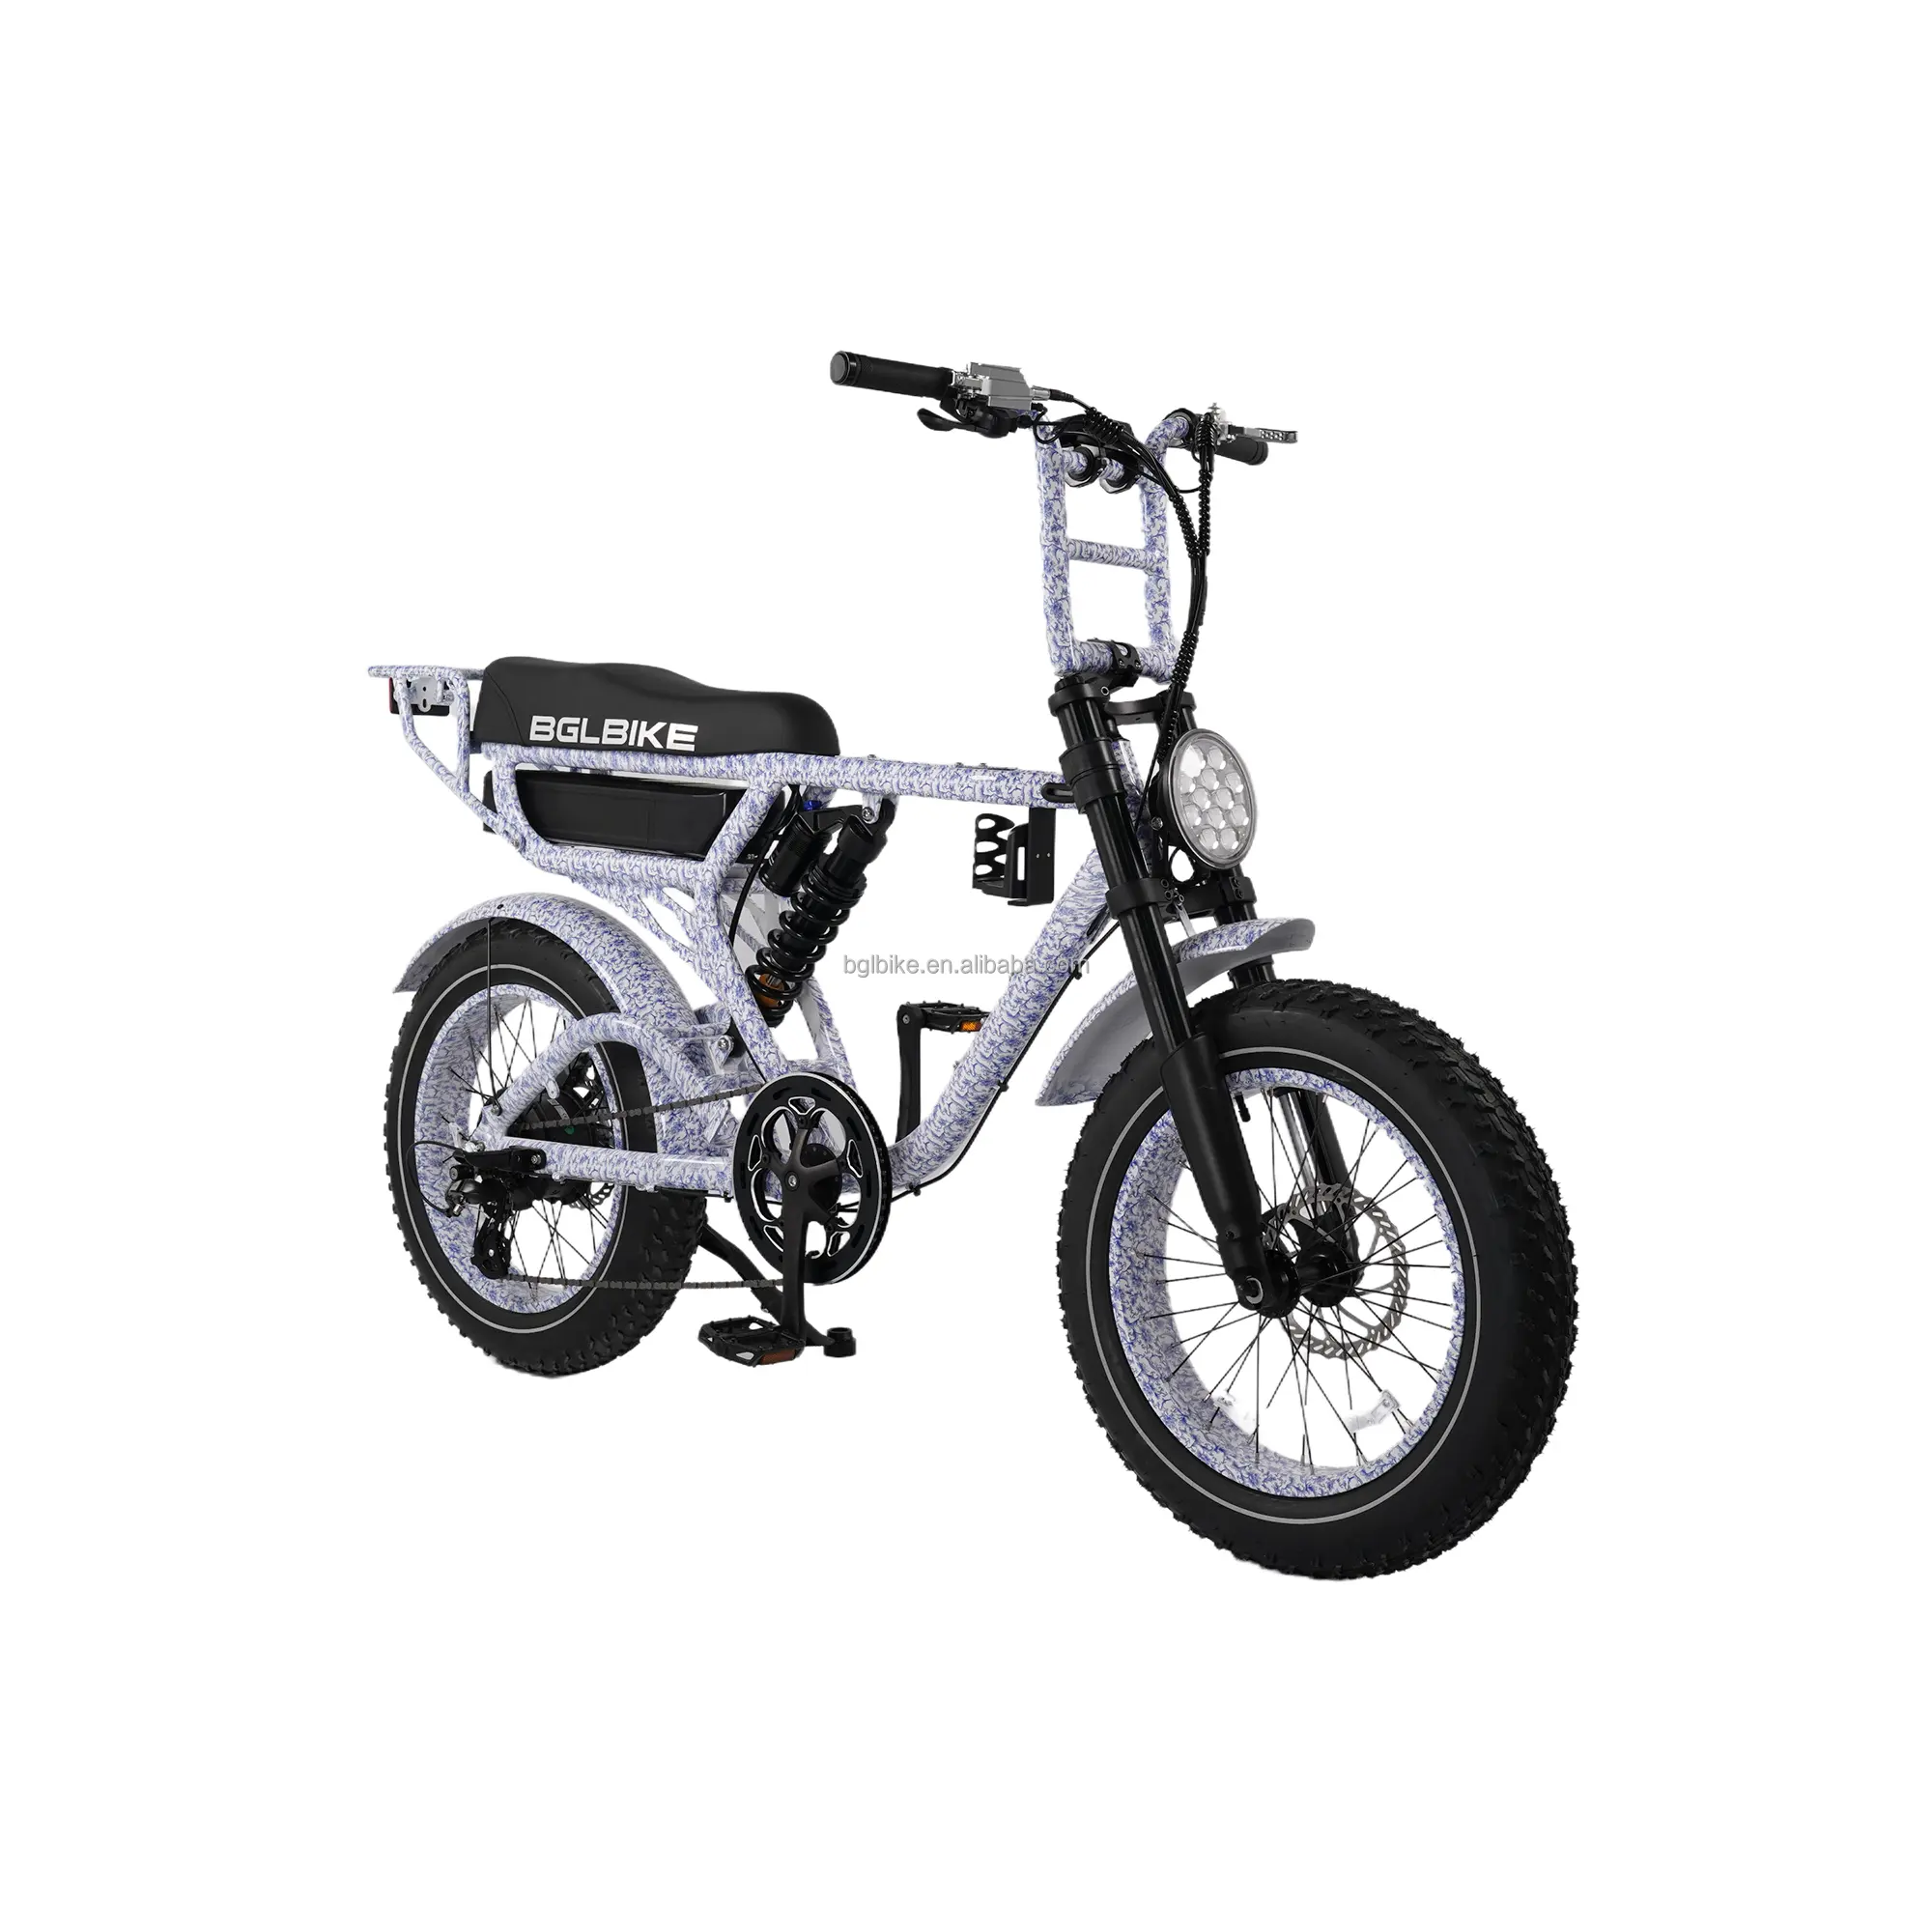 Bicicleta híbrida eléctrica DE SUSPENSIÓN COMPLETA OEM Factory e Hub motor 48V 1000W bicicleta batería de litio